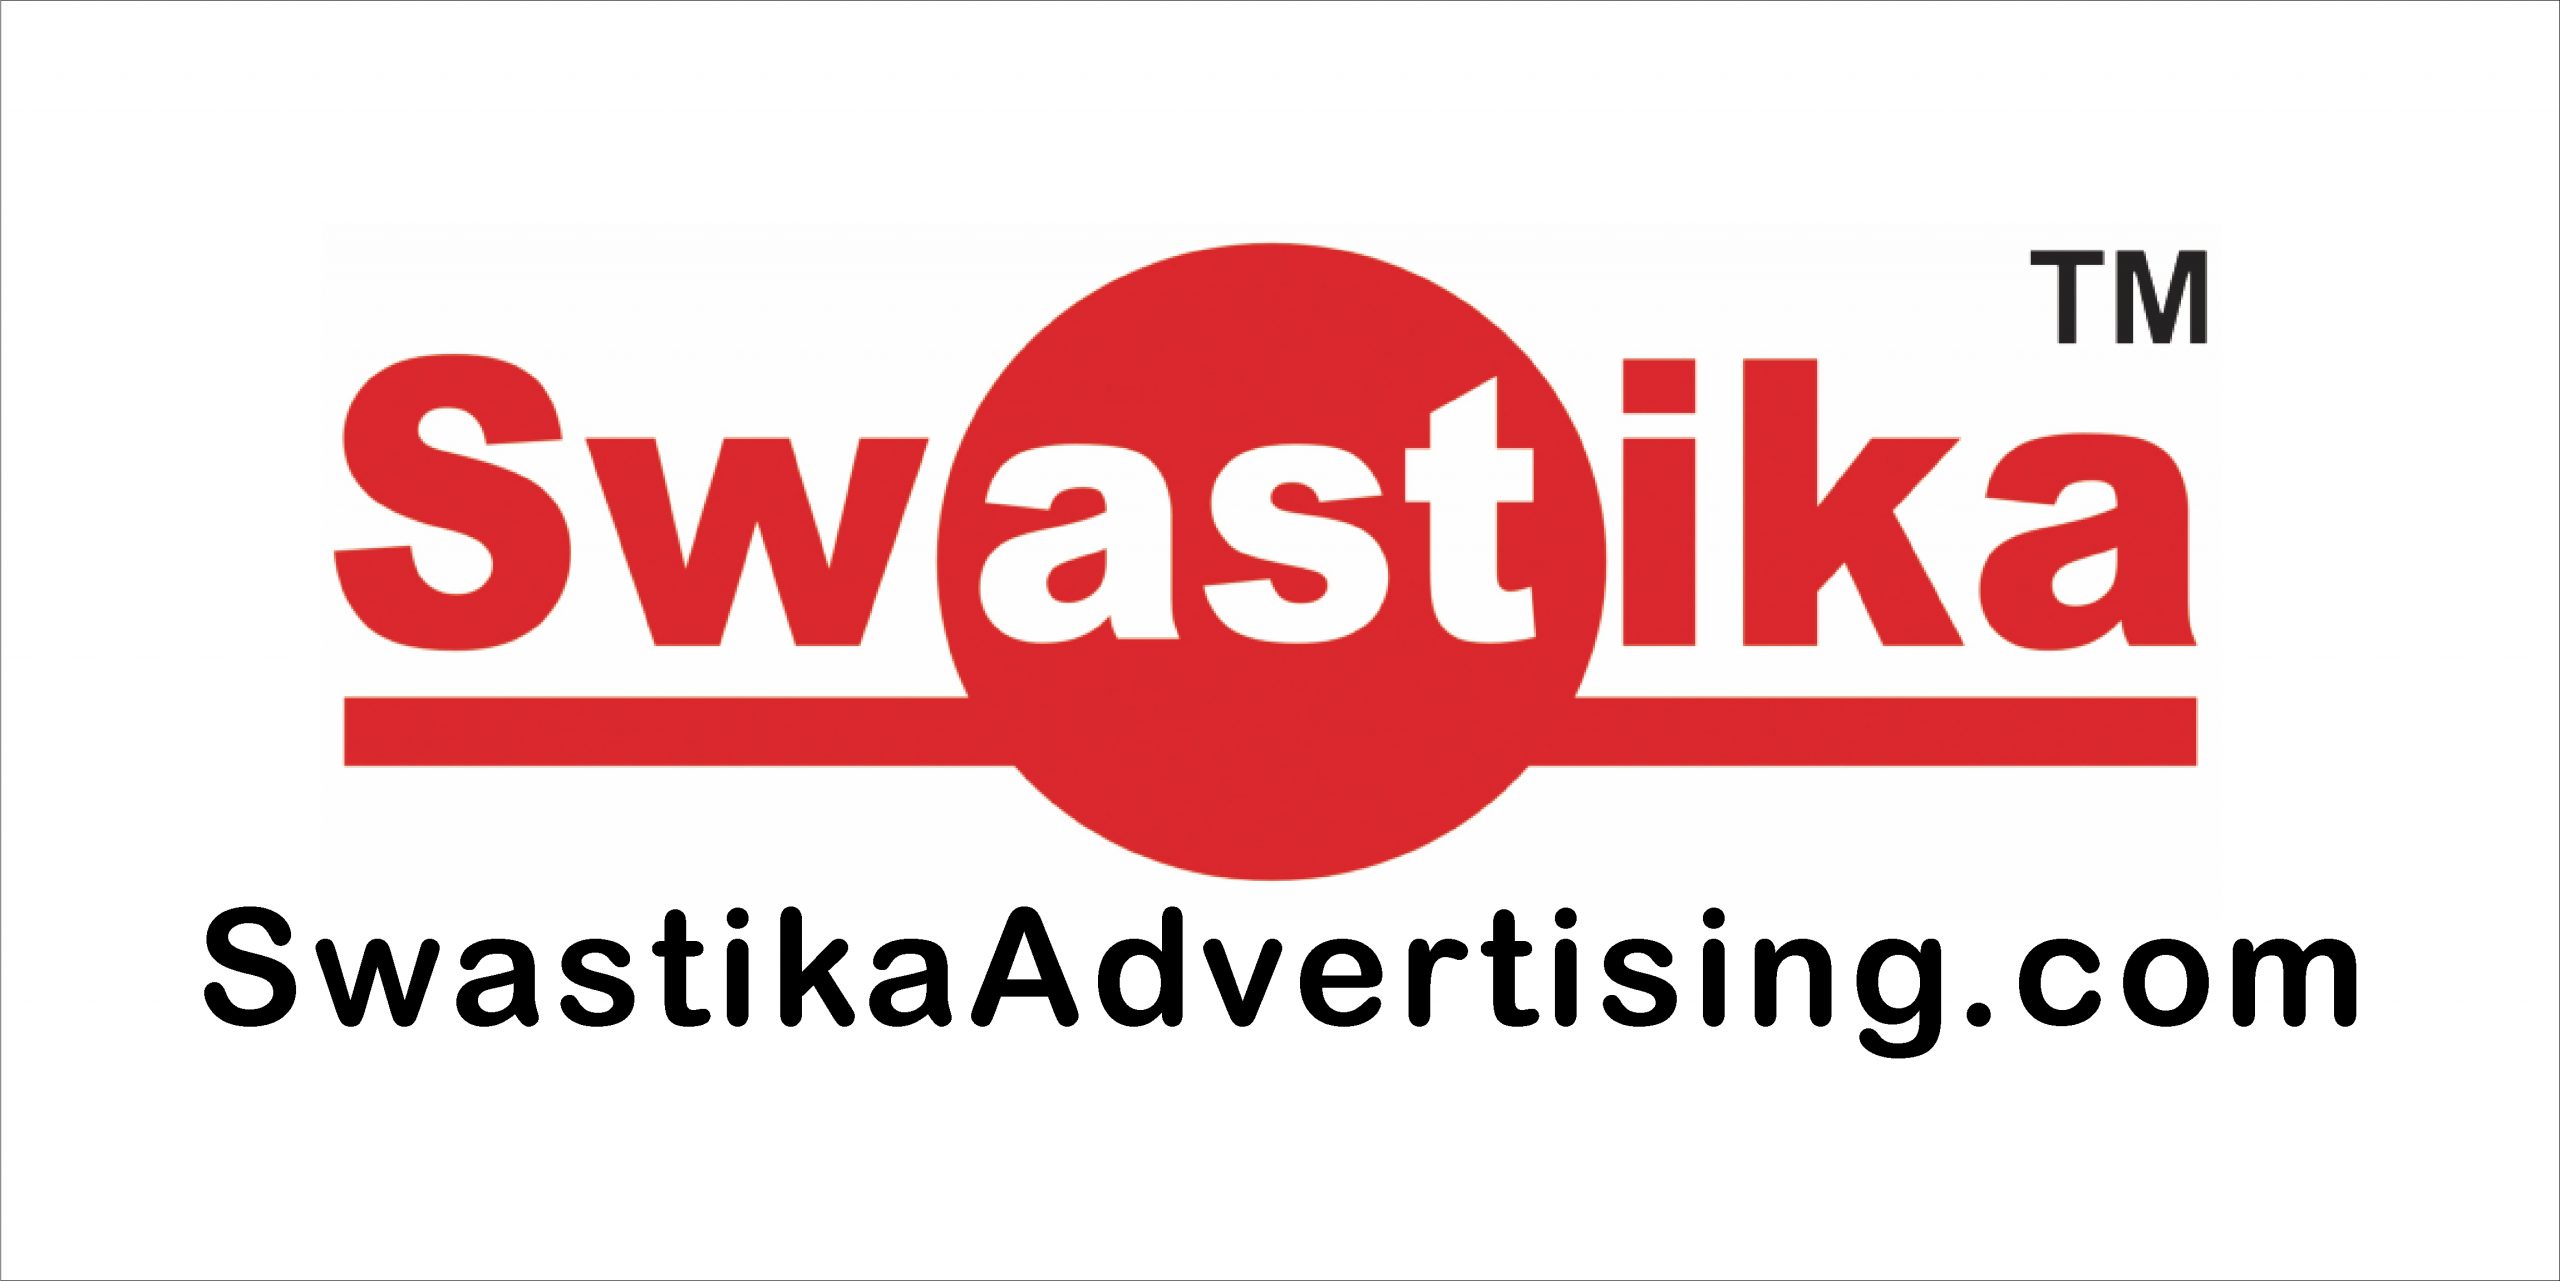 reklame pekanbaru - swastika advertising